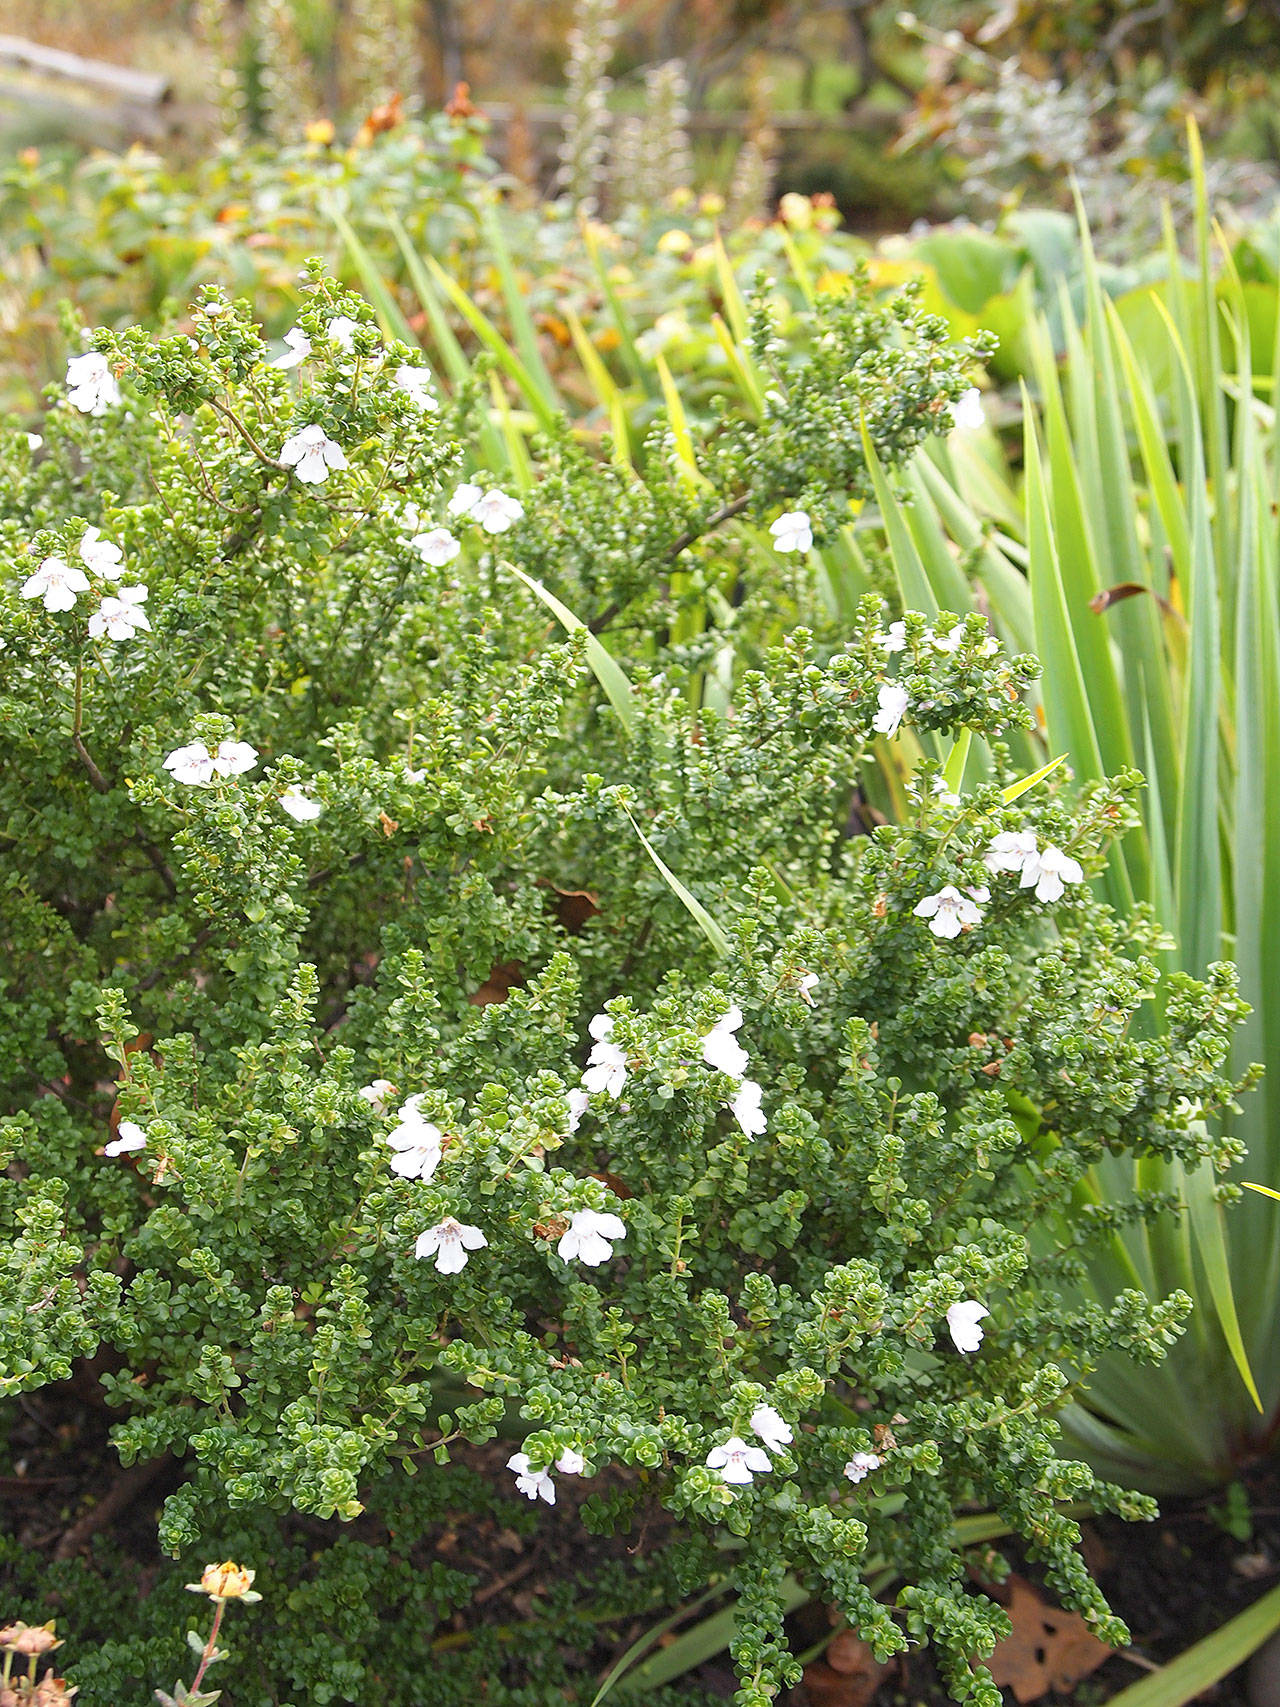 Alpine mint bush is native to Australia but grows quite well in Pacific Northwest gardens. (Richie Steffen)